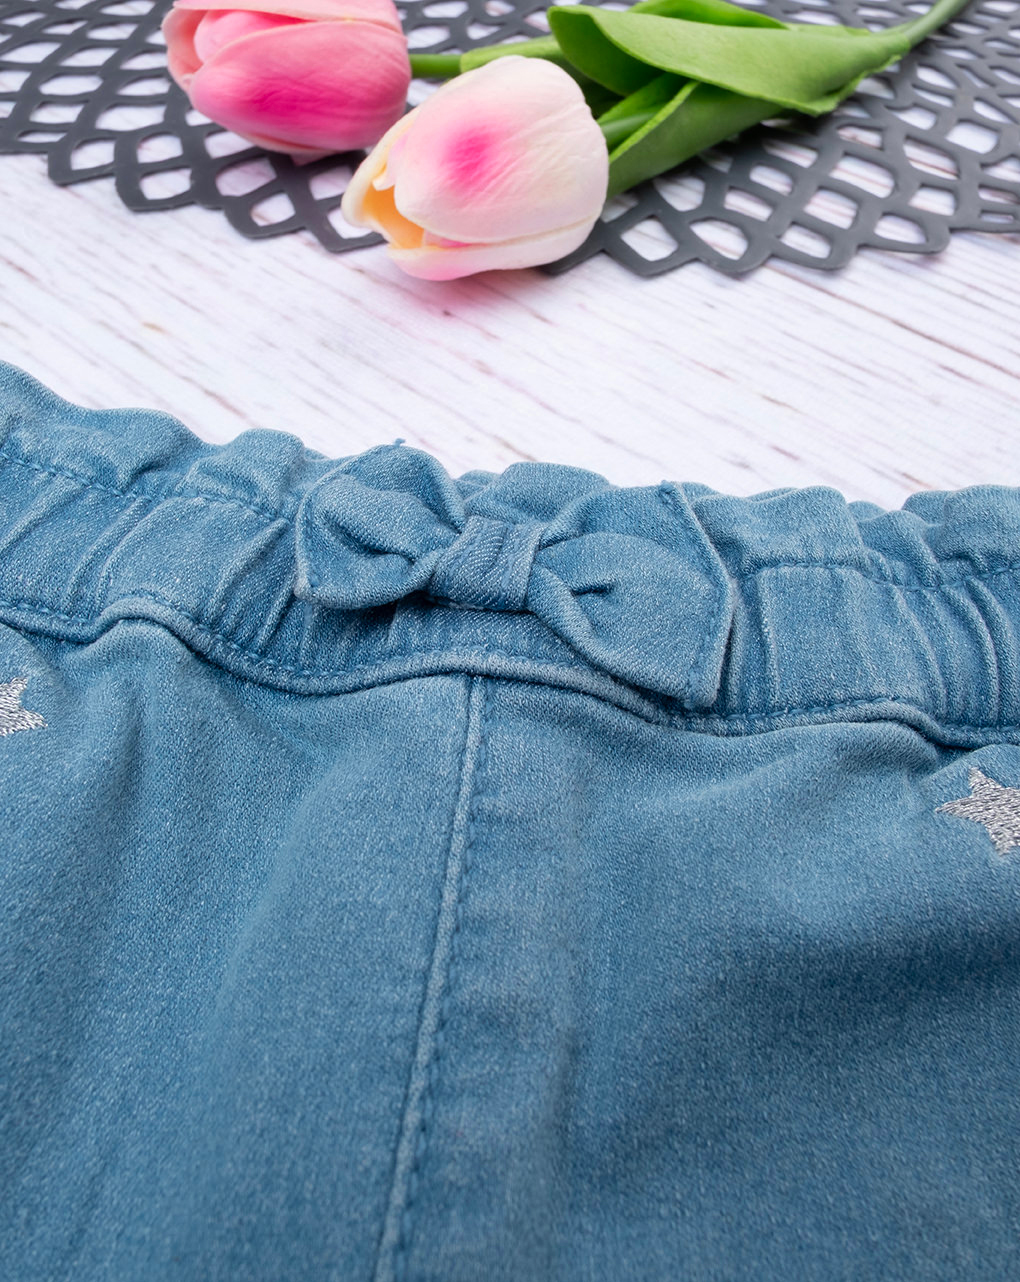 βρεφικό τζιν παντελόνι μπλε ανοιχτό με αστεράκια για κορίτσι - Prénatal